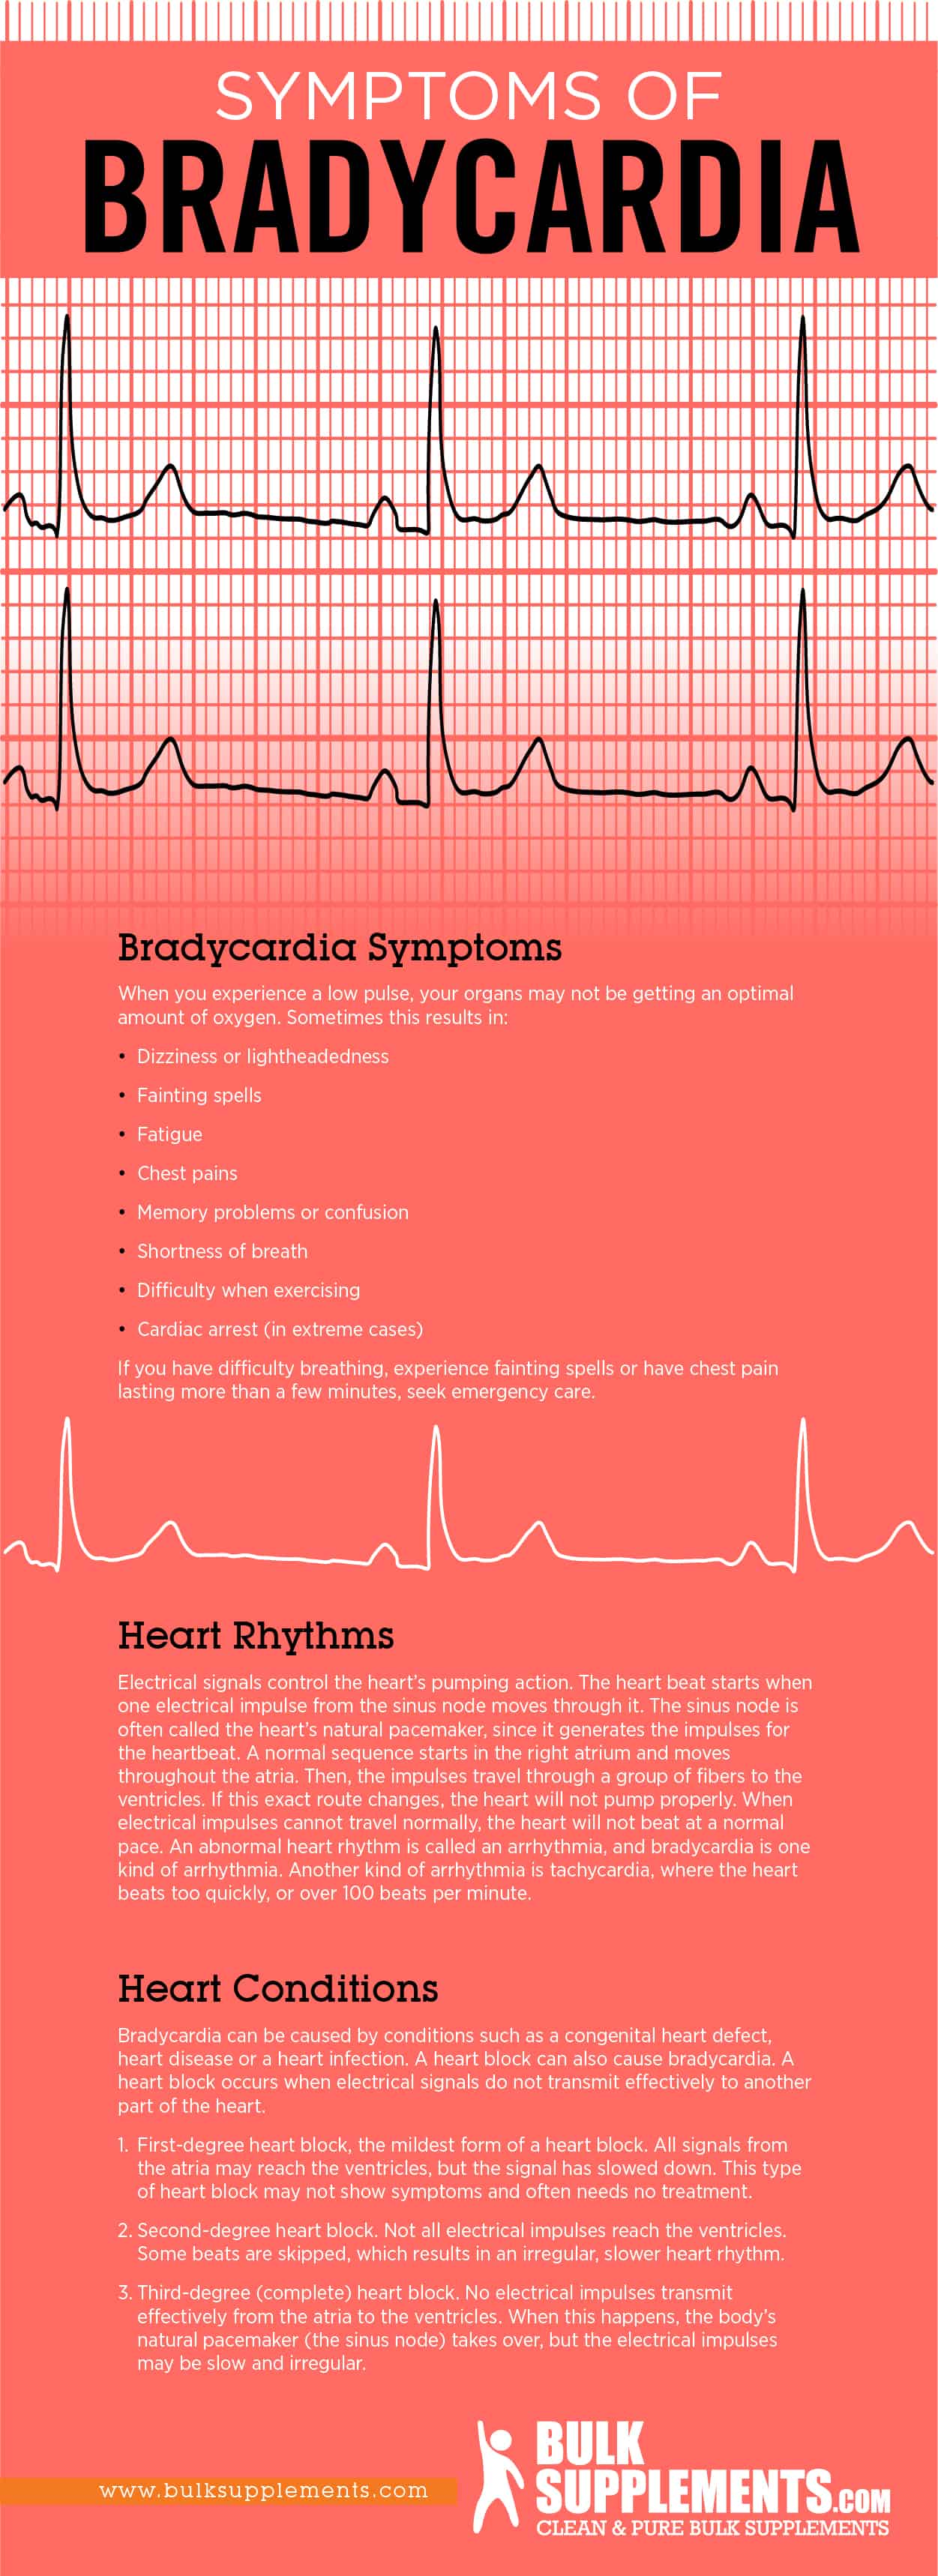 Bradycardia Symptoms